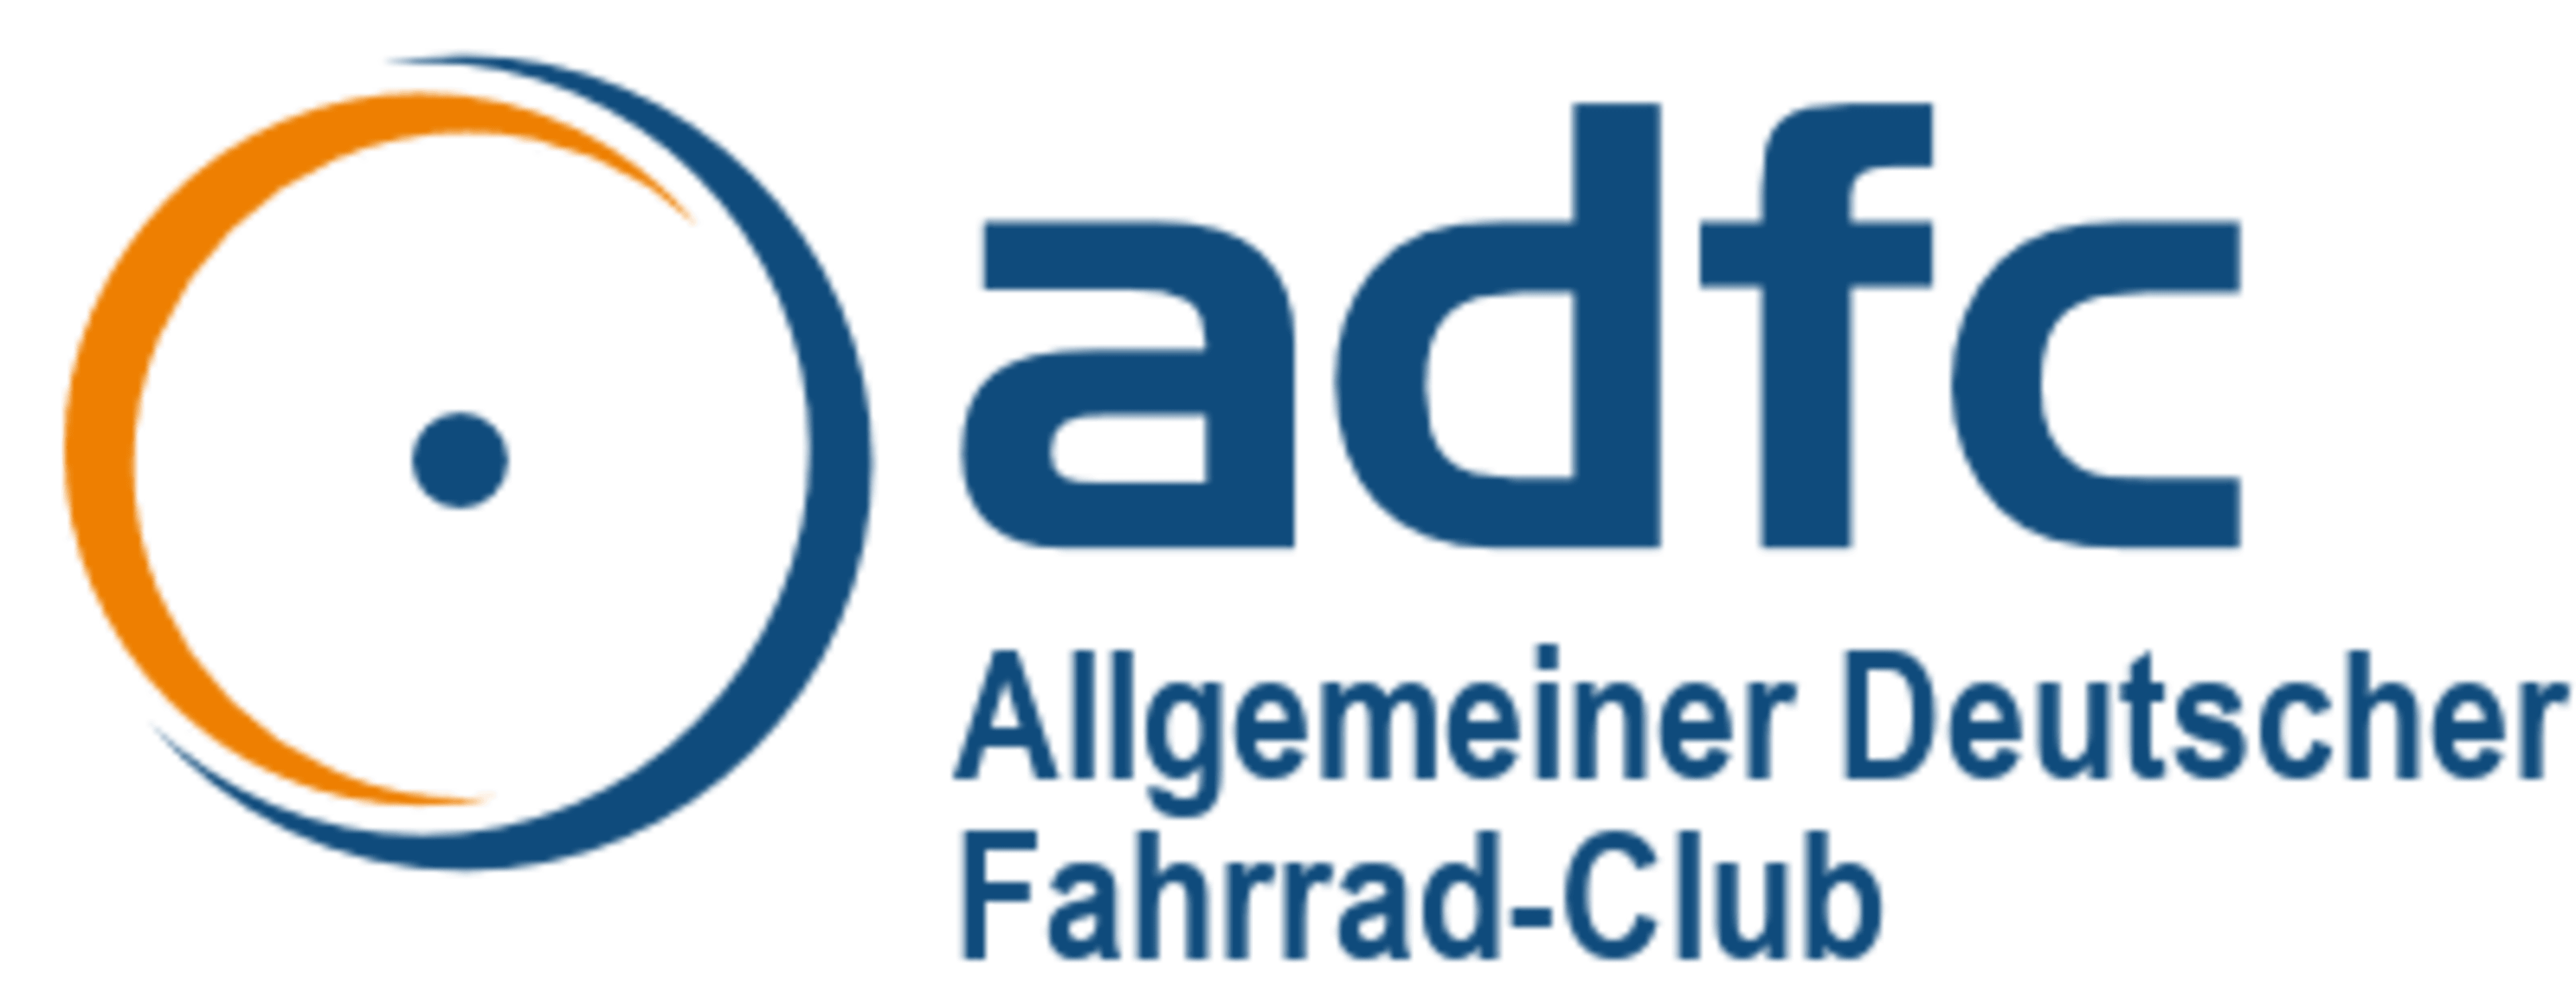 Allgemeiner Deutscher Fahrrad-Club logo